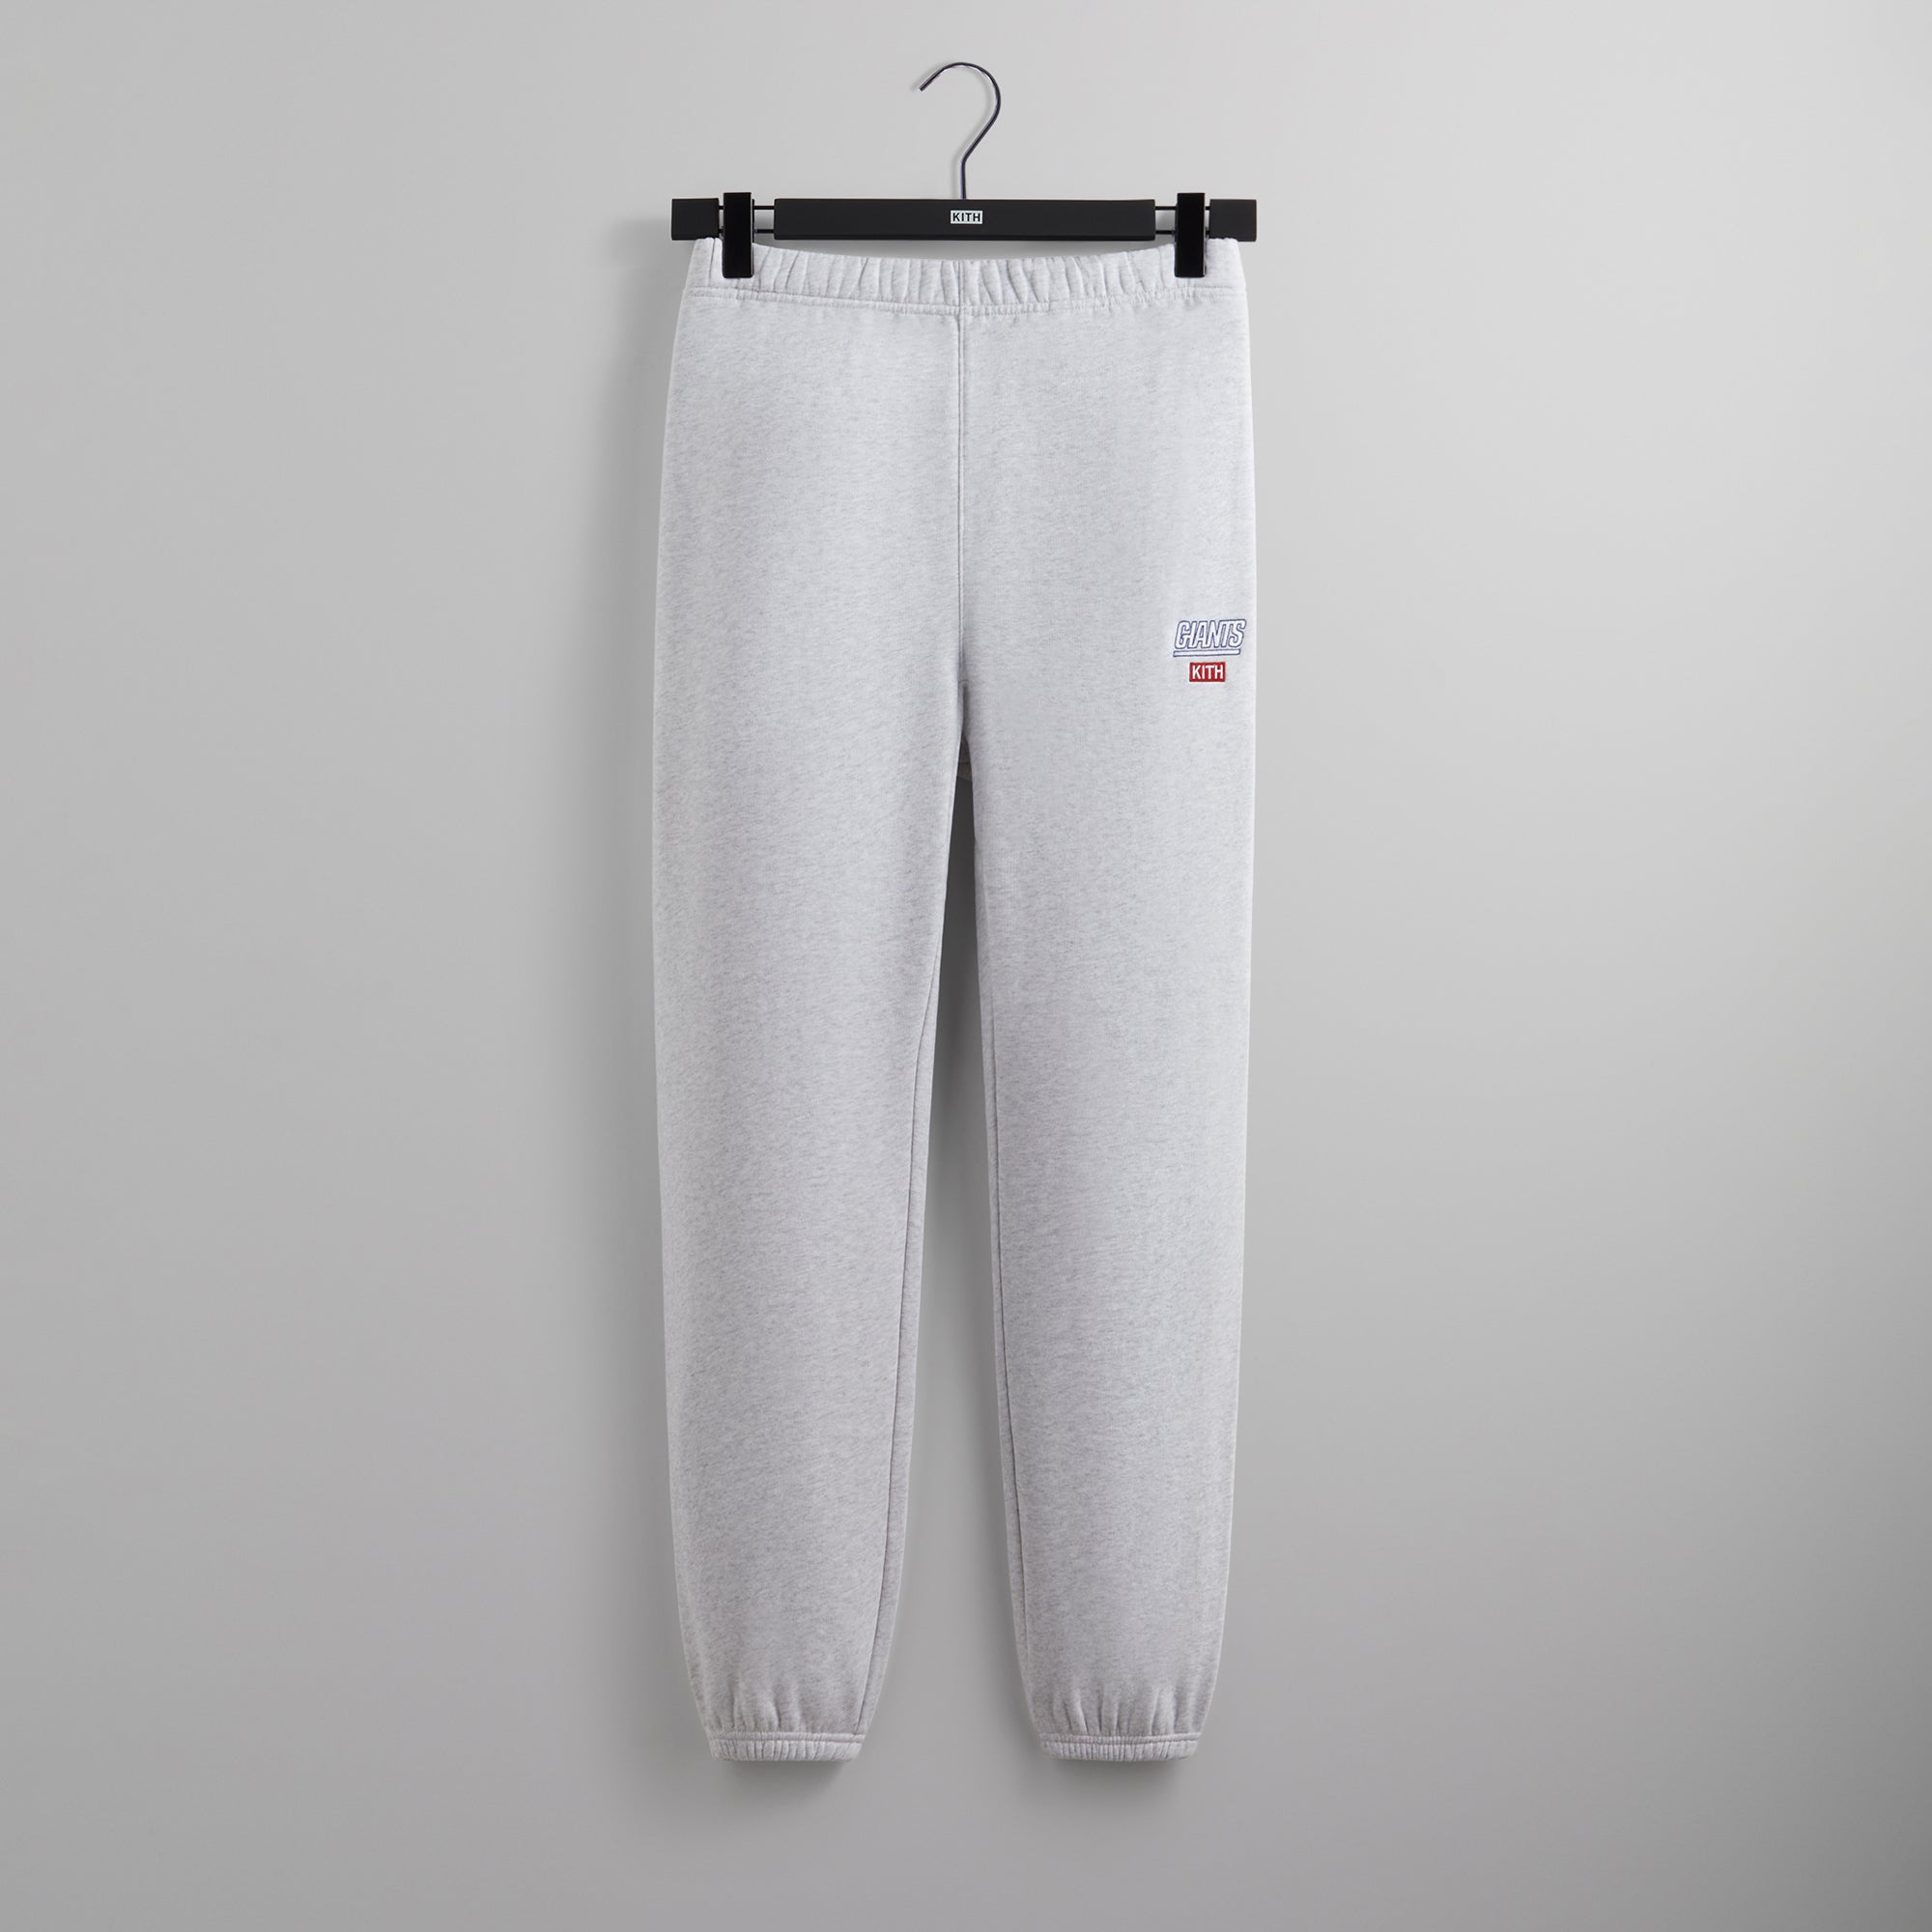 股上30cmKITH Sweatpants White grey XL